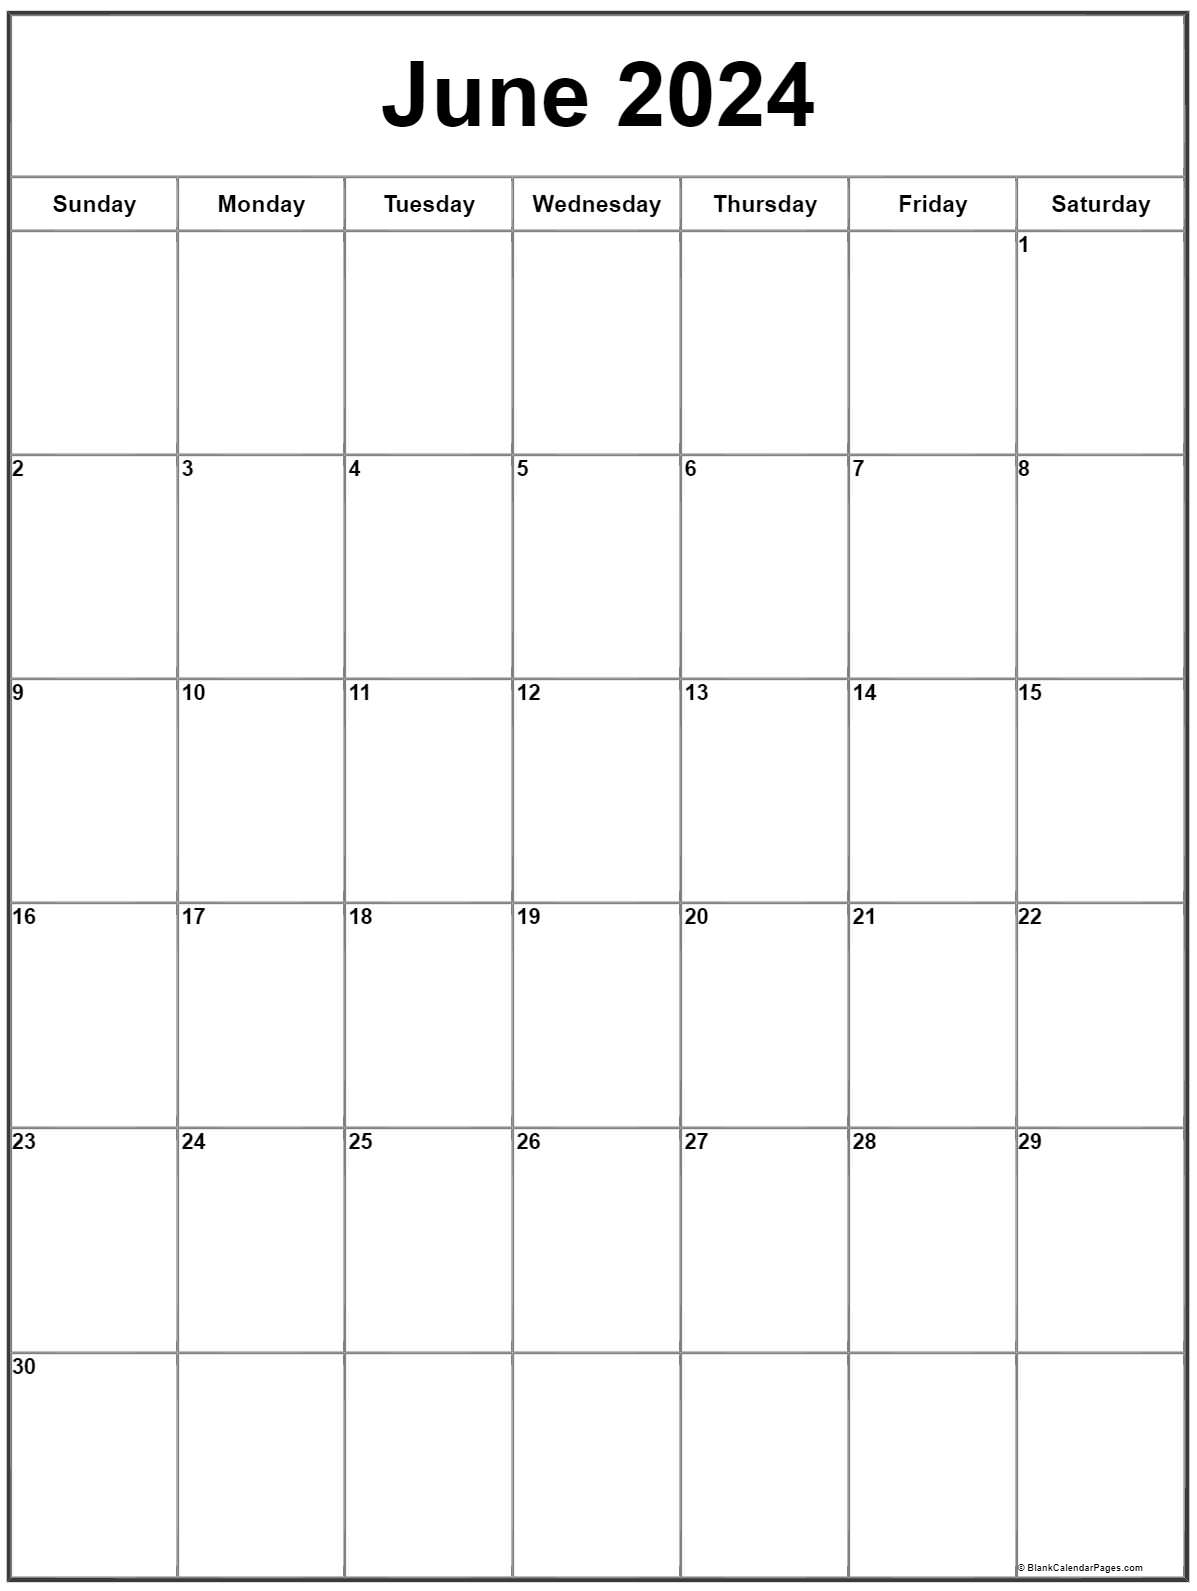 june-2023-calendar-template-june-2023-blank-monthly-calendar-free